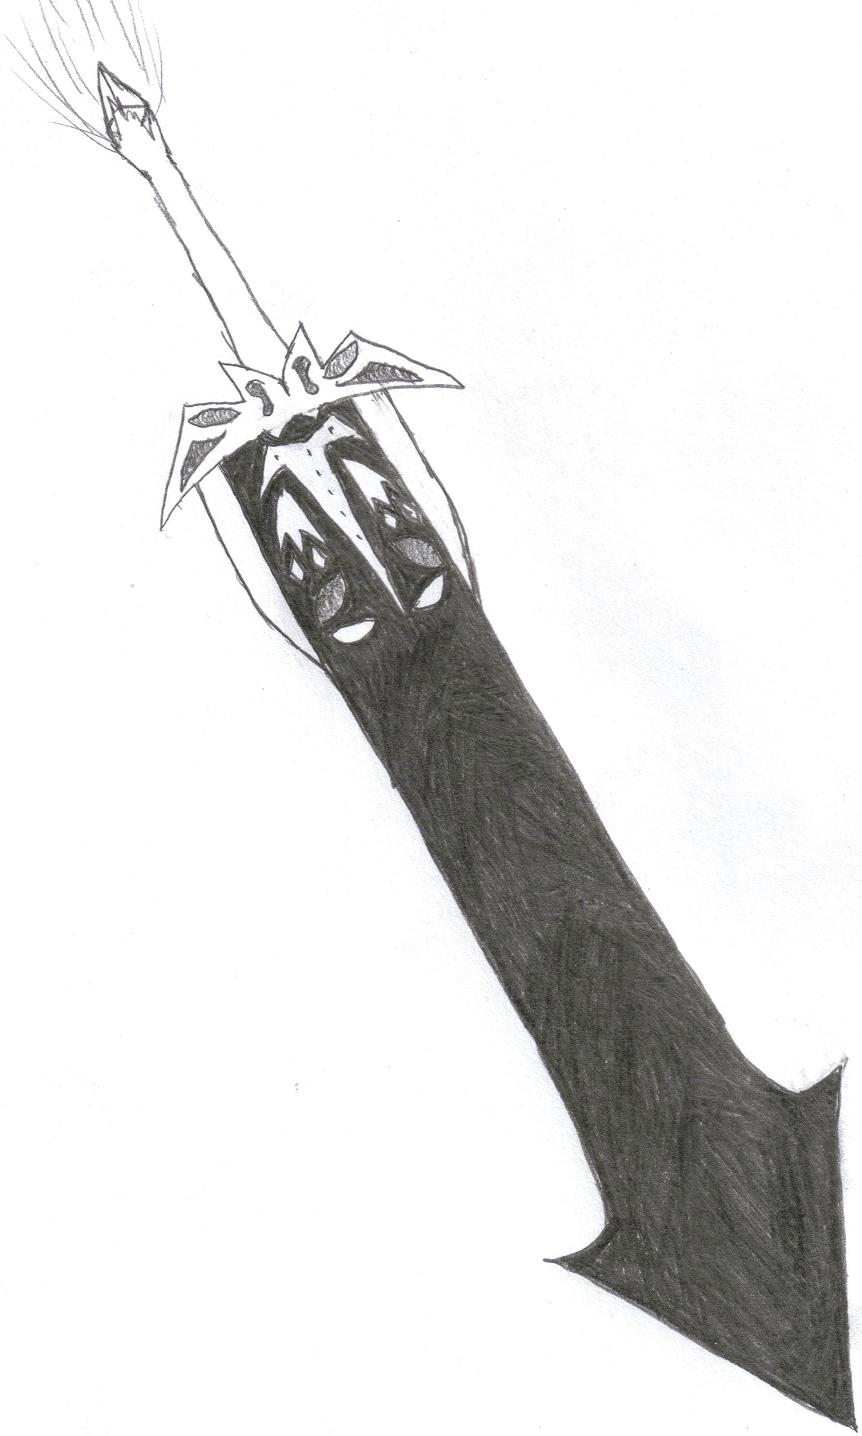 The Dark Sword, Obsidia by Raz